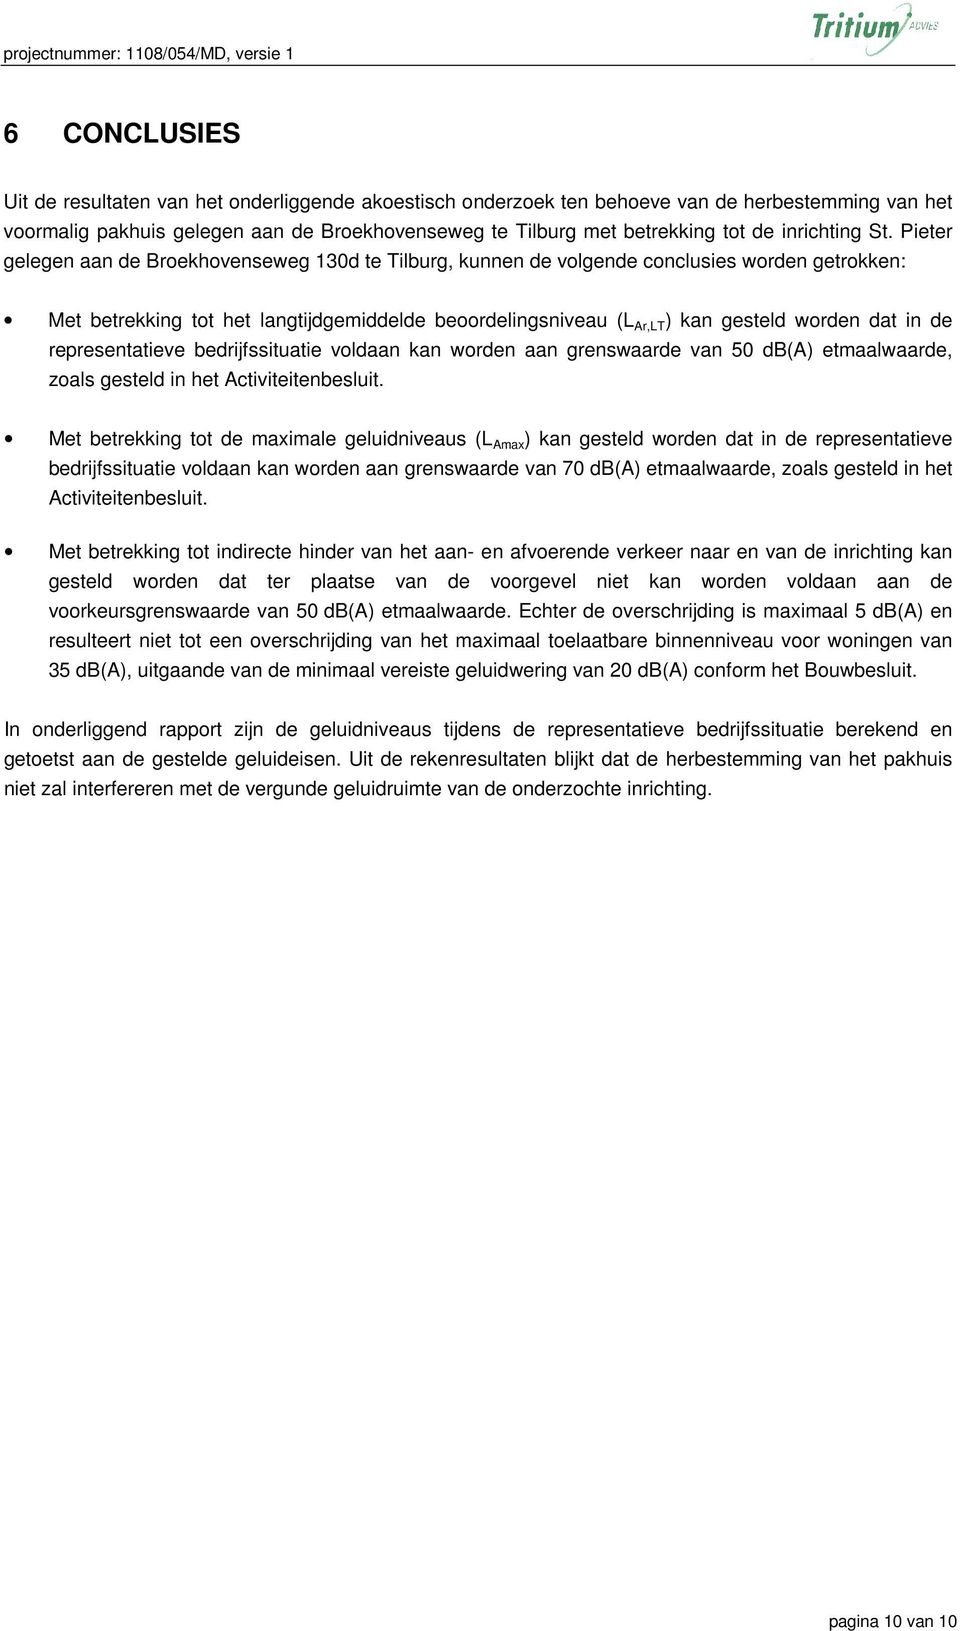 Pieter gelegen aan de Broekhovenseweg 130d te Tilburg, kunnen de volgende conclusies worden getrokken: Met betrekking tot het langtijdgemiddelde beoordelingsniveau (L Ar,LT ) kan gesteld worden dat